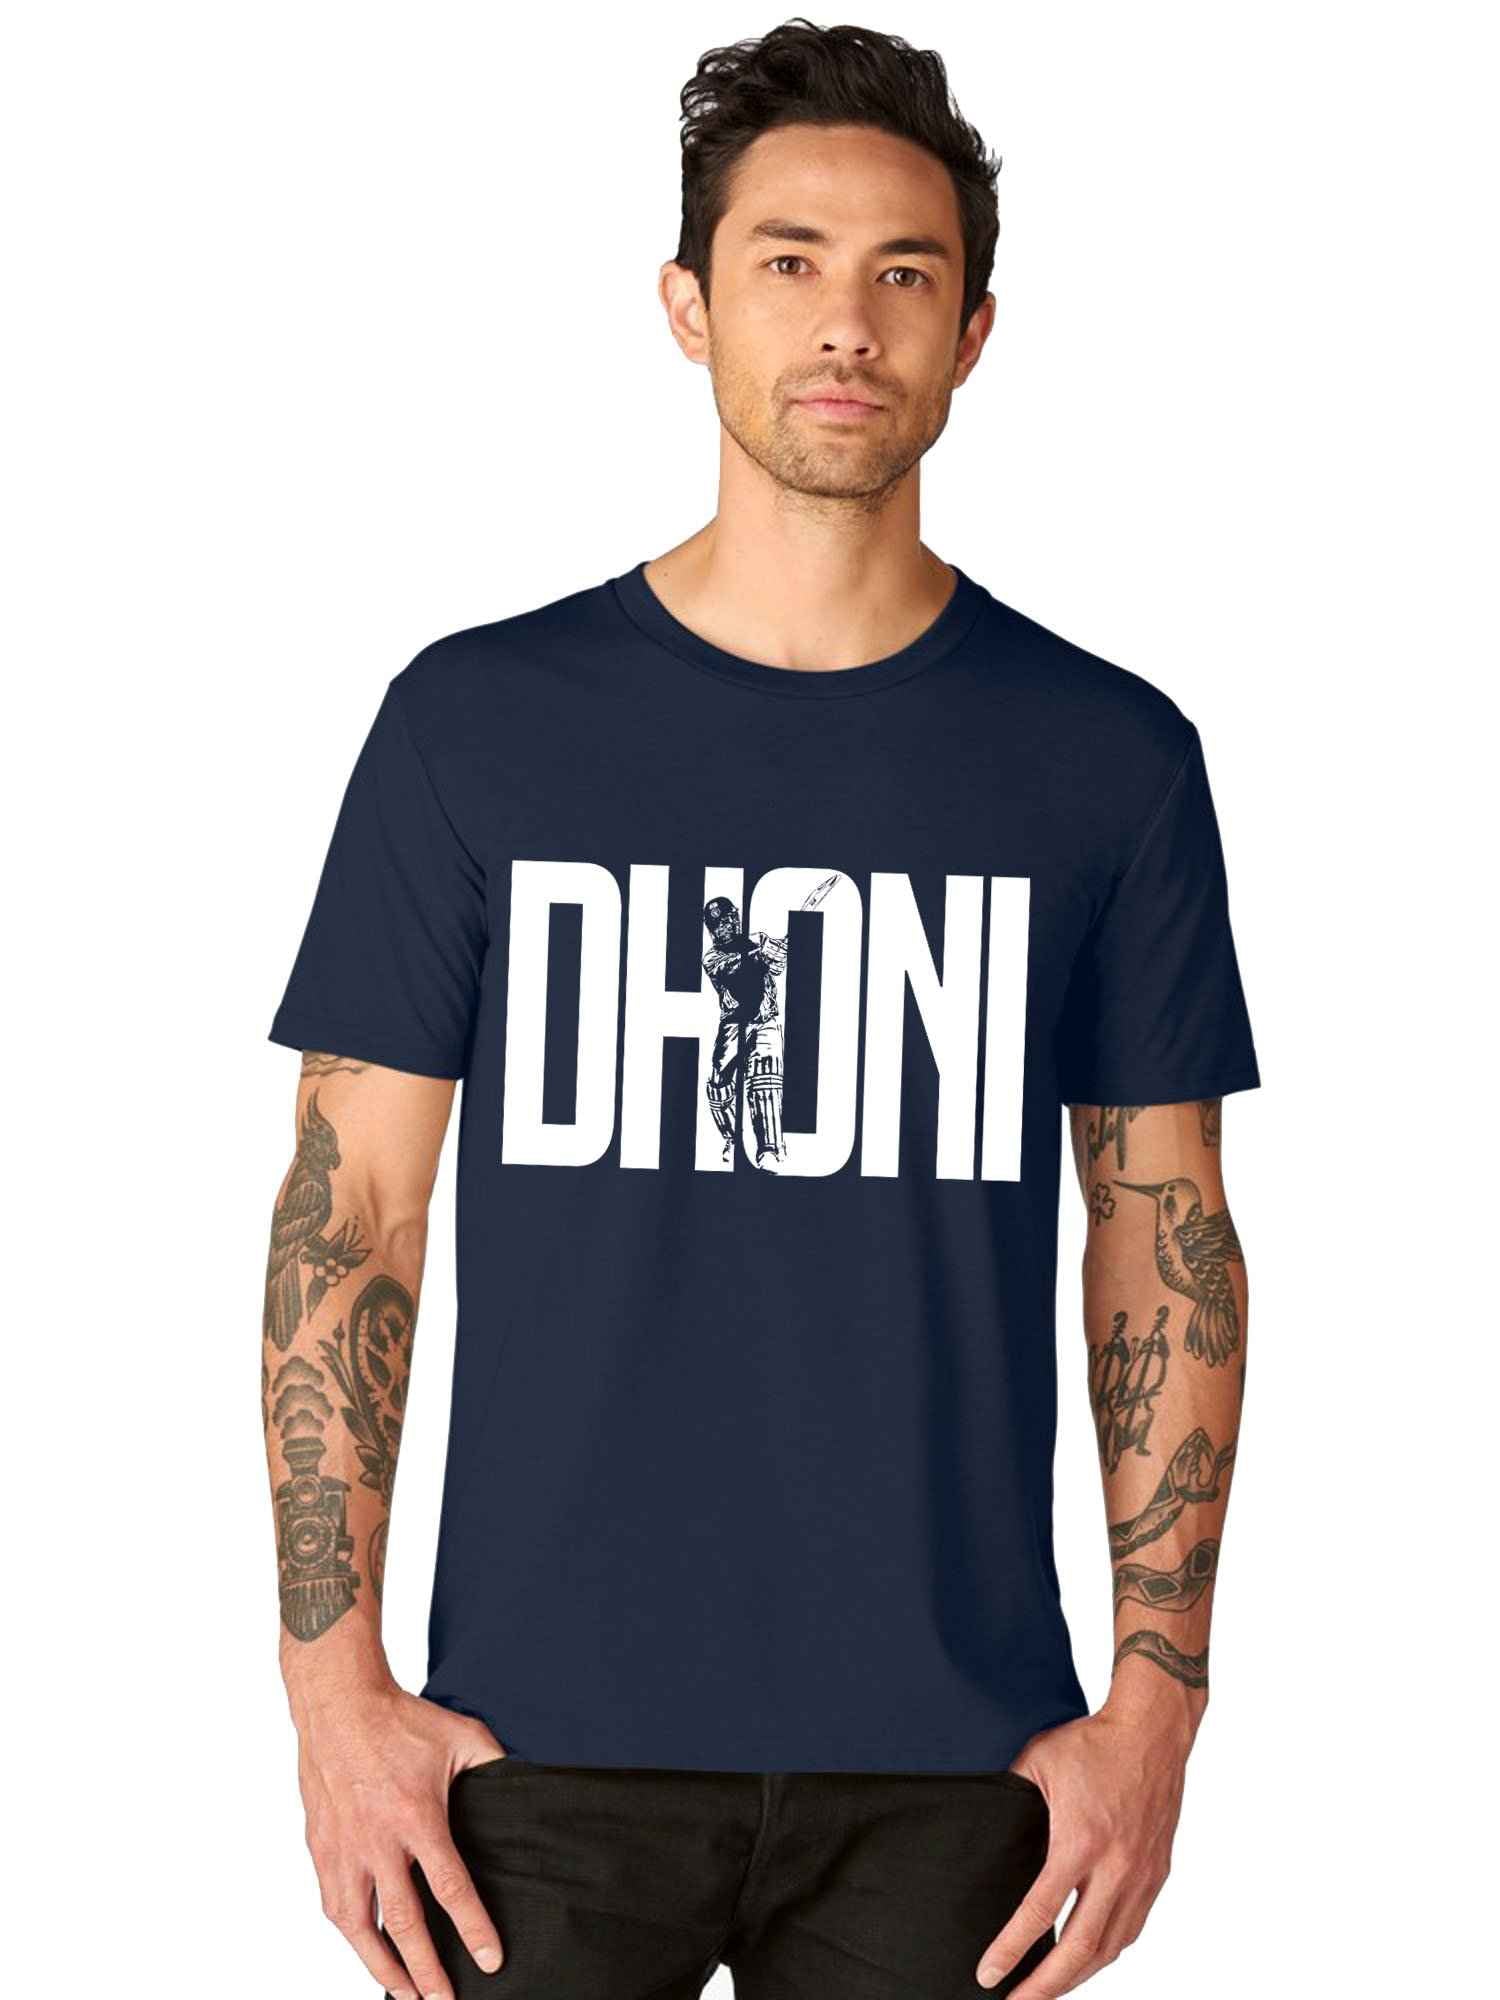 ms dhoni t shirt online